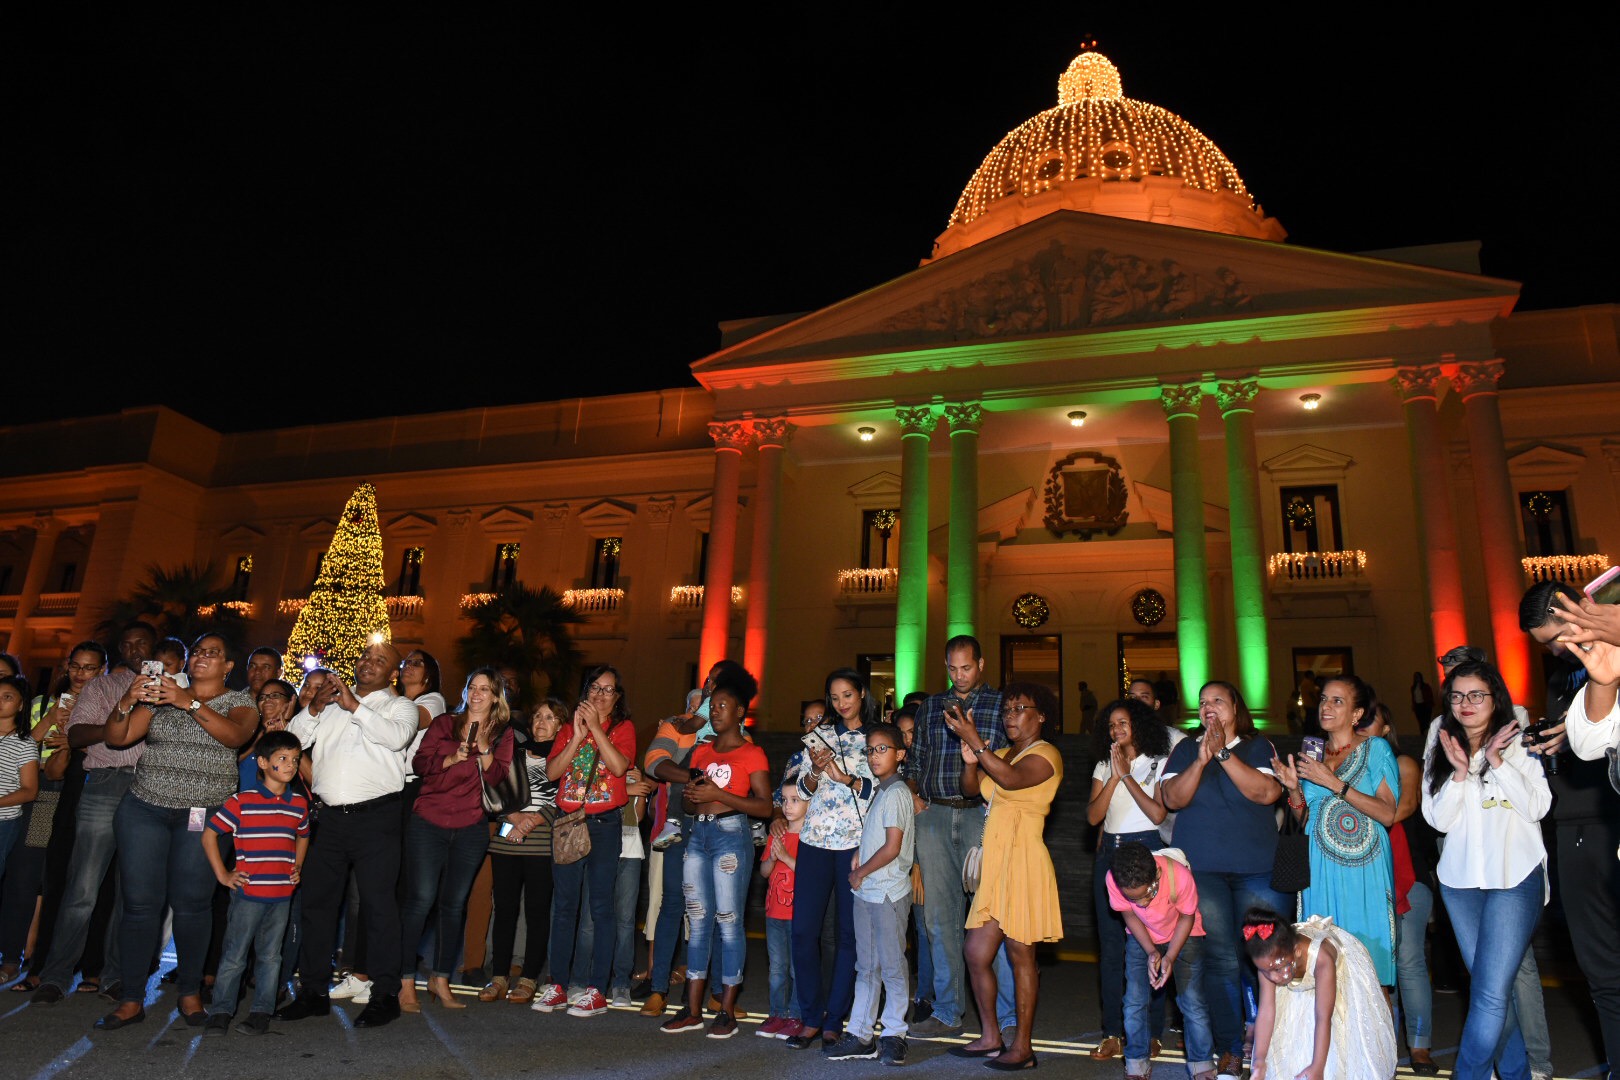 REPÚBLICA DOMINICANA: Más de 24 mil ciudadanos y ciudadanas visitaron el Palacio Nacional, durante festividades navideñas